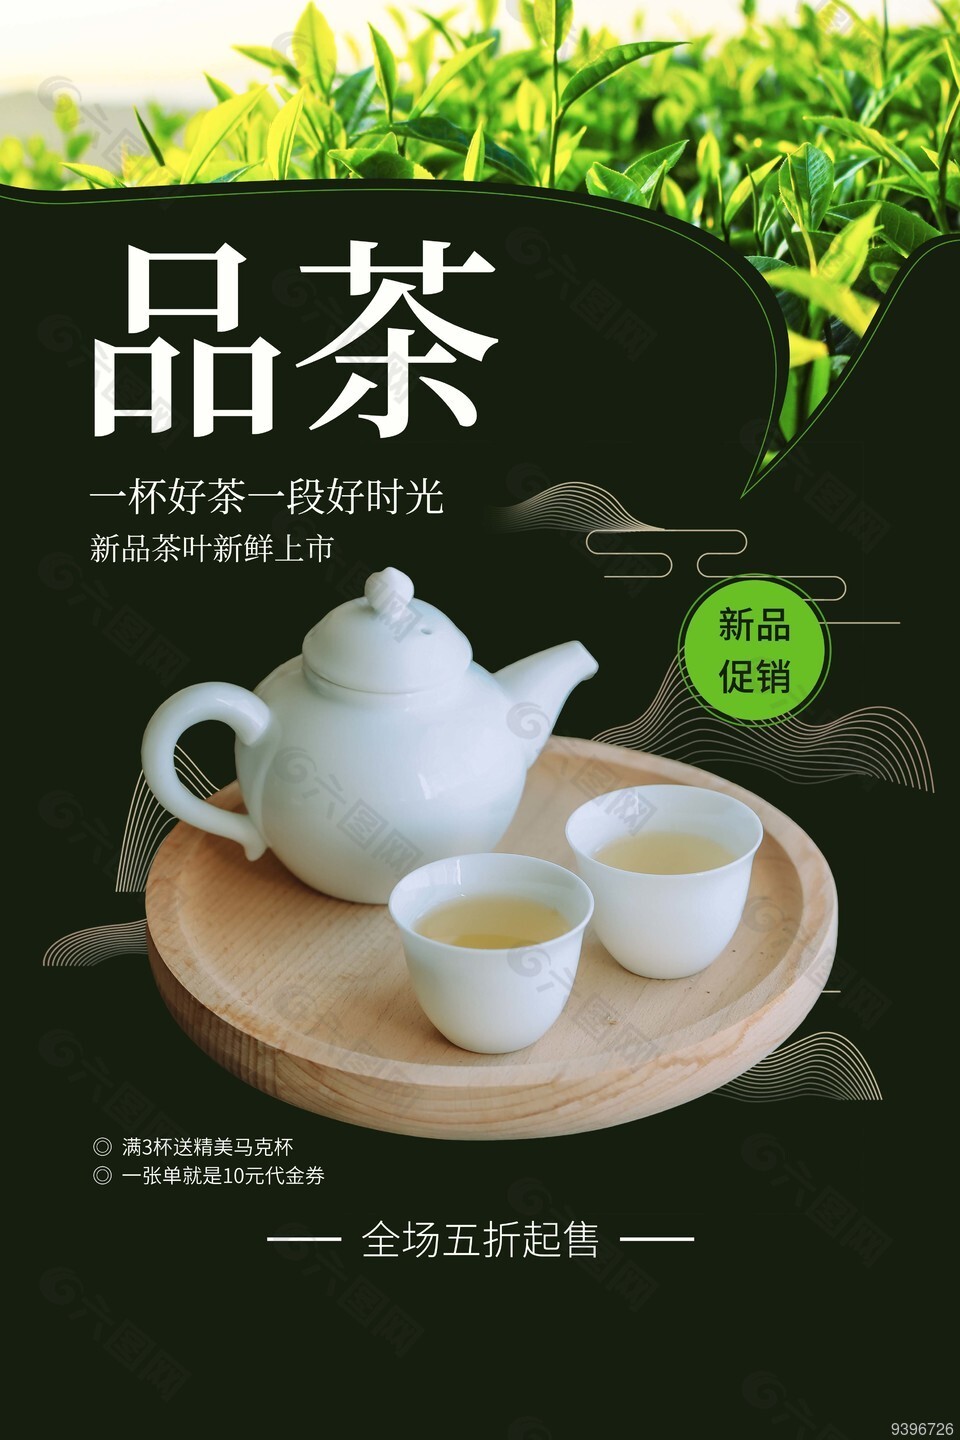 品茶新品促销活动海报素材下载